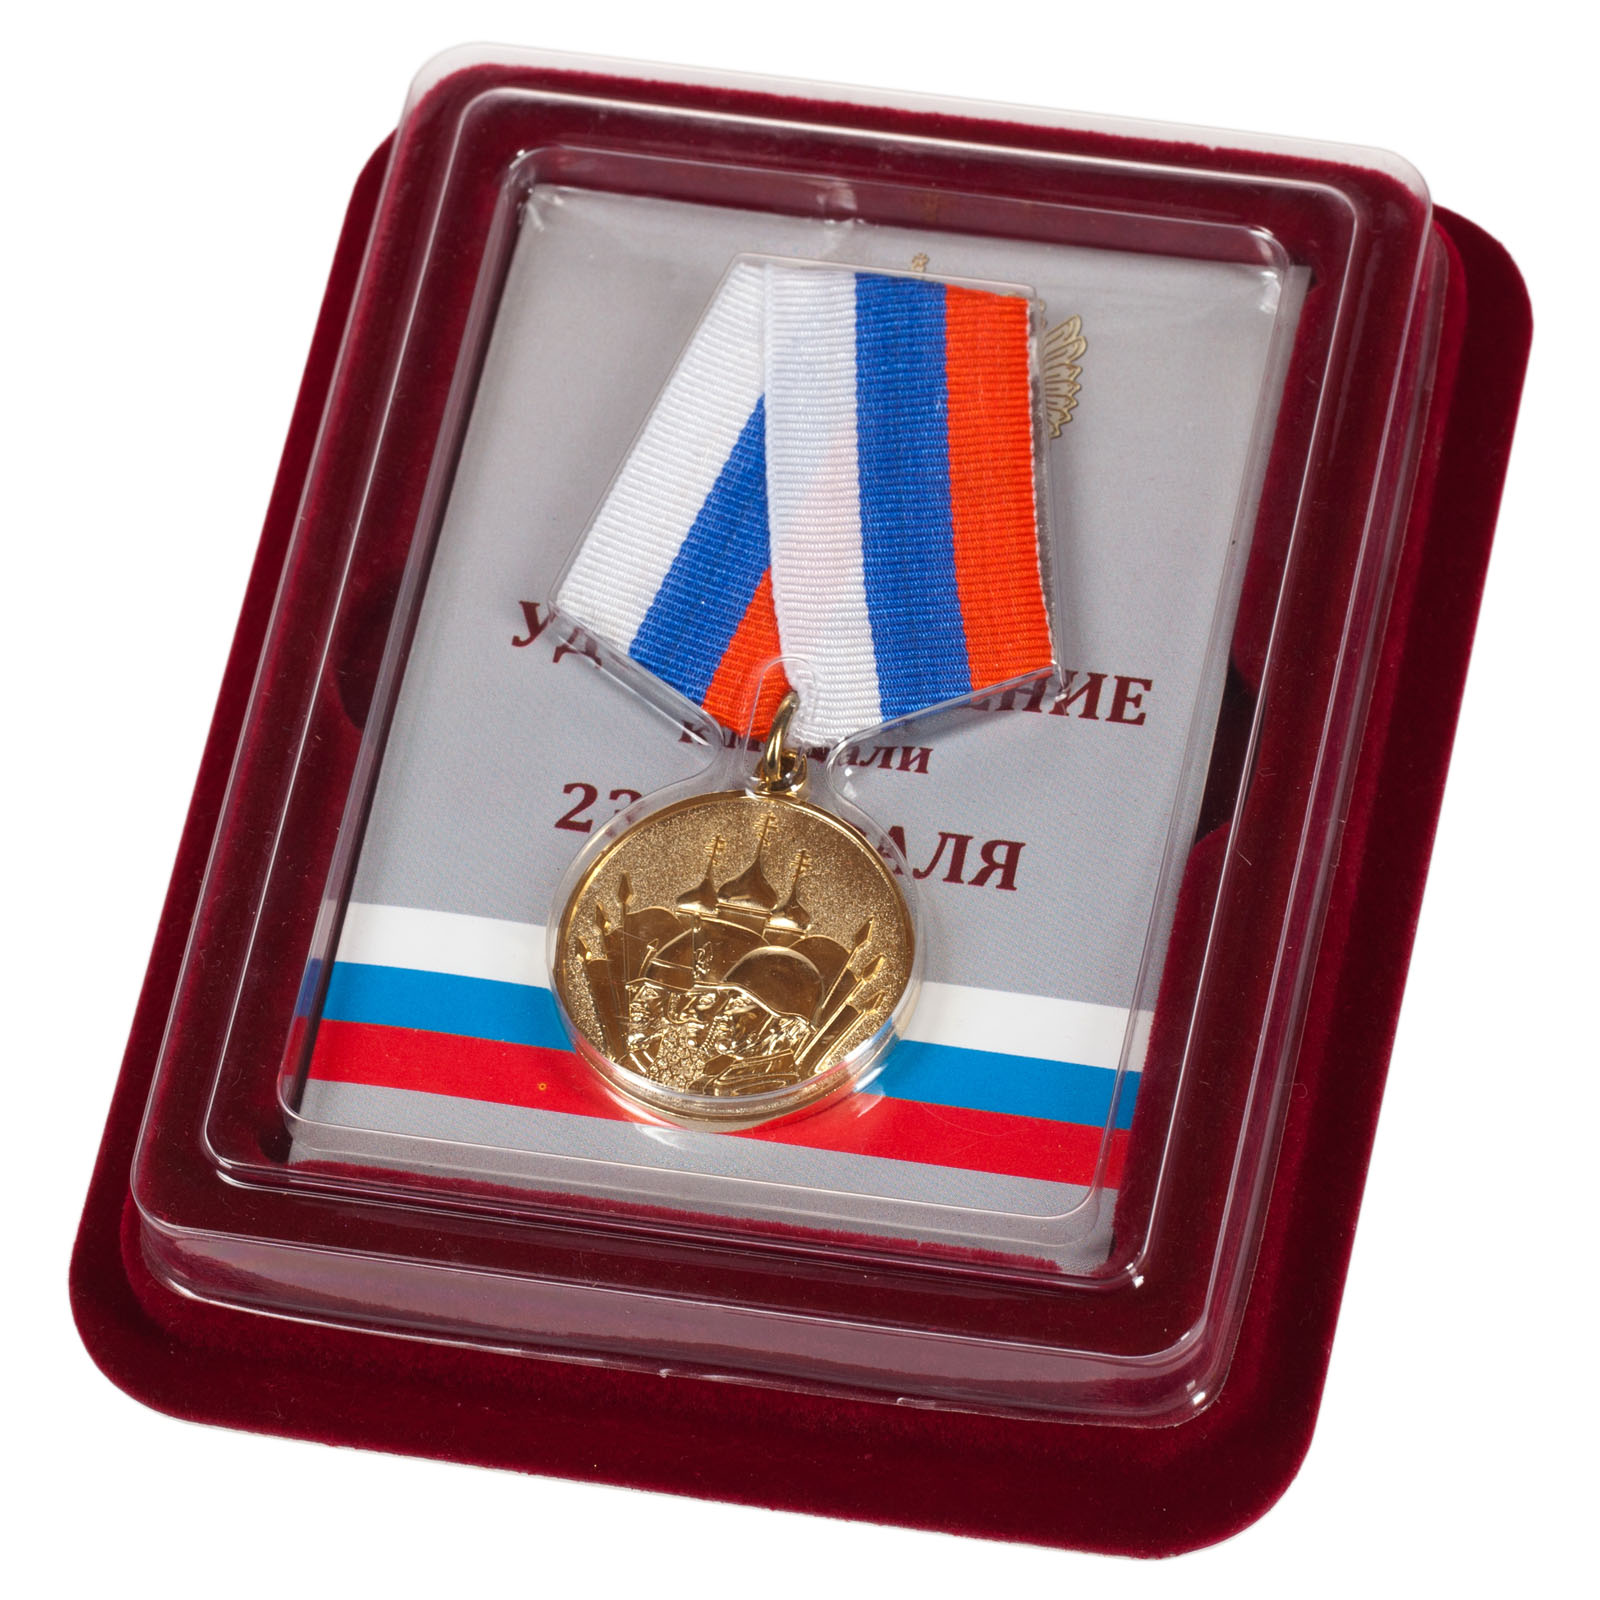 Подарочная медаль "23 февраля" в наградной коробке по выгодной цене